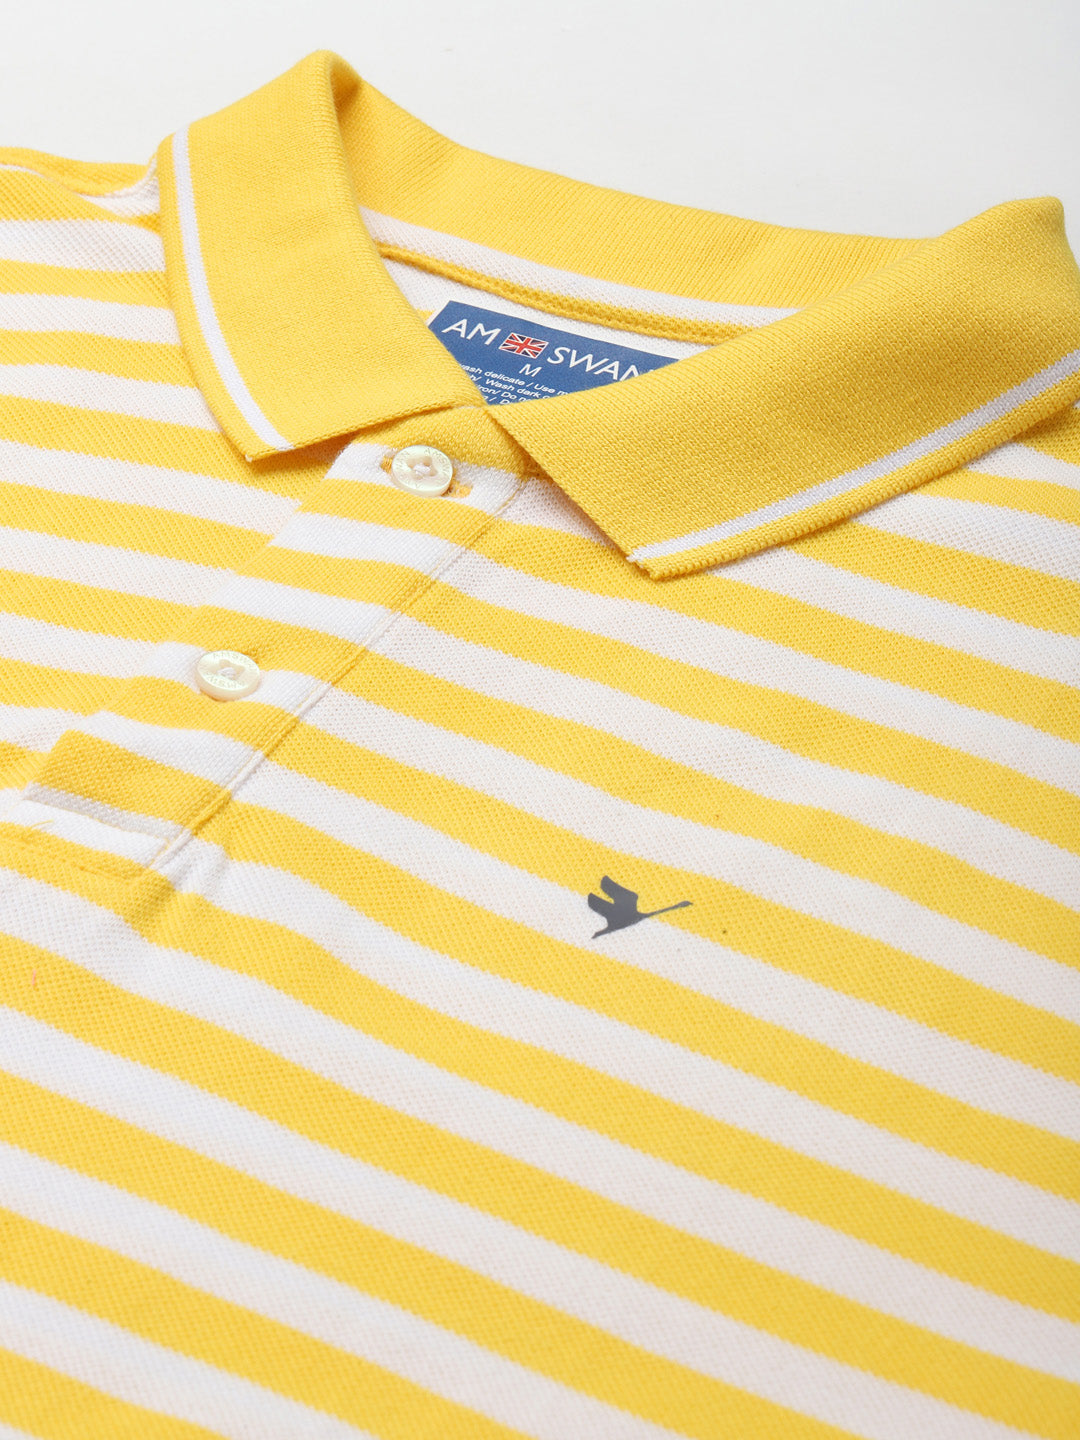 Premium Yellow Cotton Striped Half Sleeve Polo